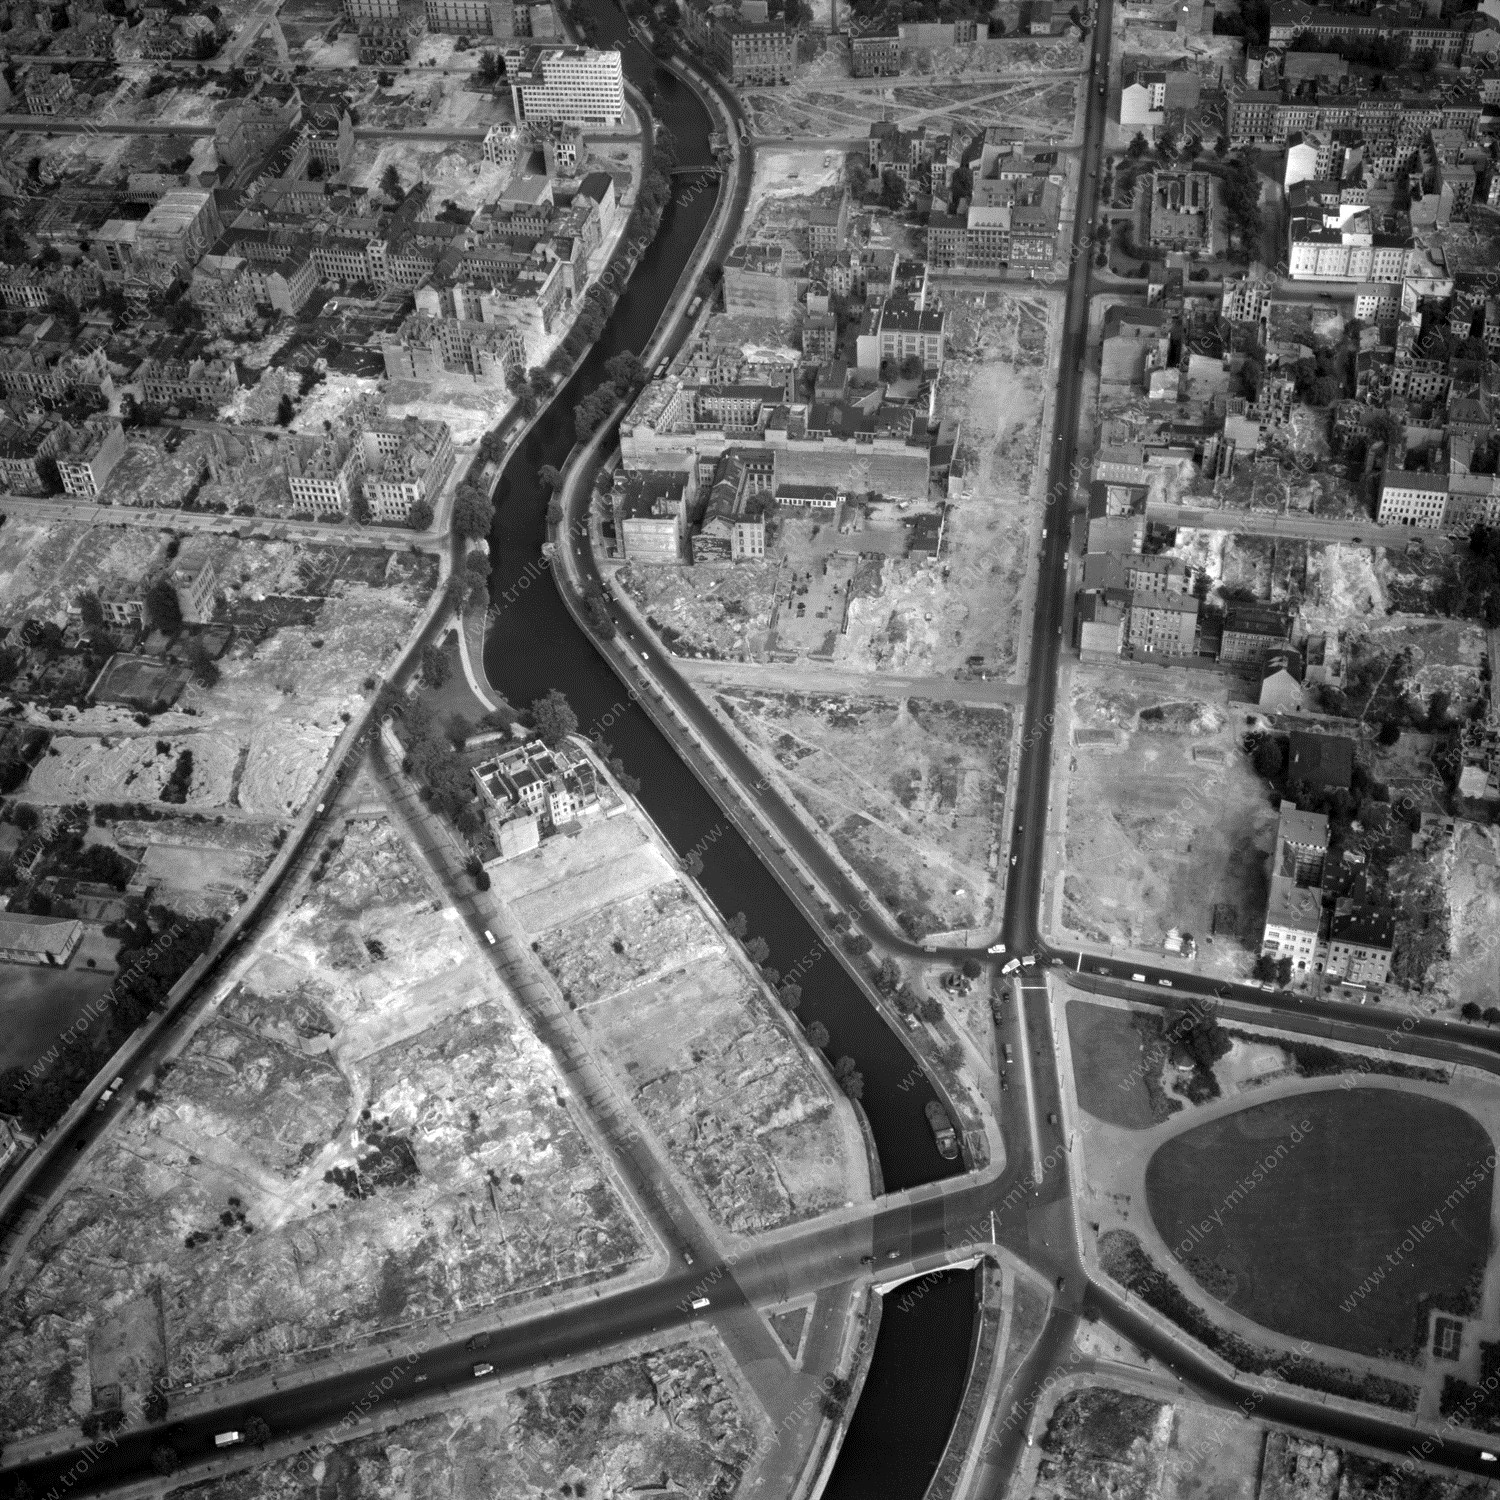 Alte Fotos und Luftbilder von Berlin - Luftbildaufnahme Nr. 03 - Historische Luftaufnahmen von West-Berlin aus dem Jahr 1954 - Flugstrecke Whiskey